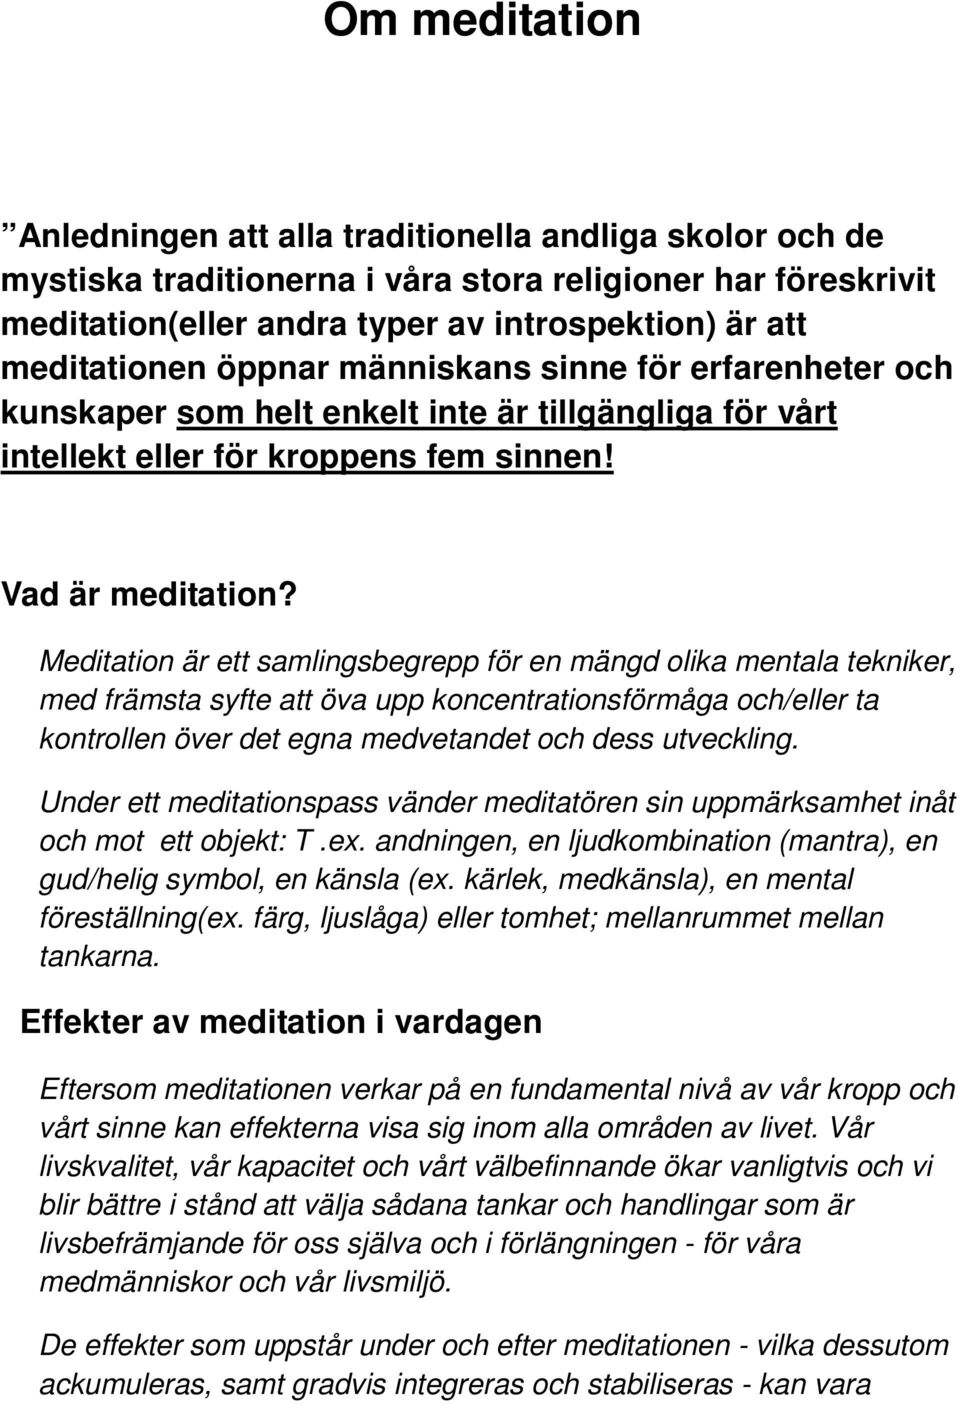 Om meditation. Vad är meditation? Effekter av meditation i ...